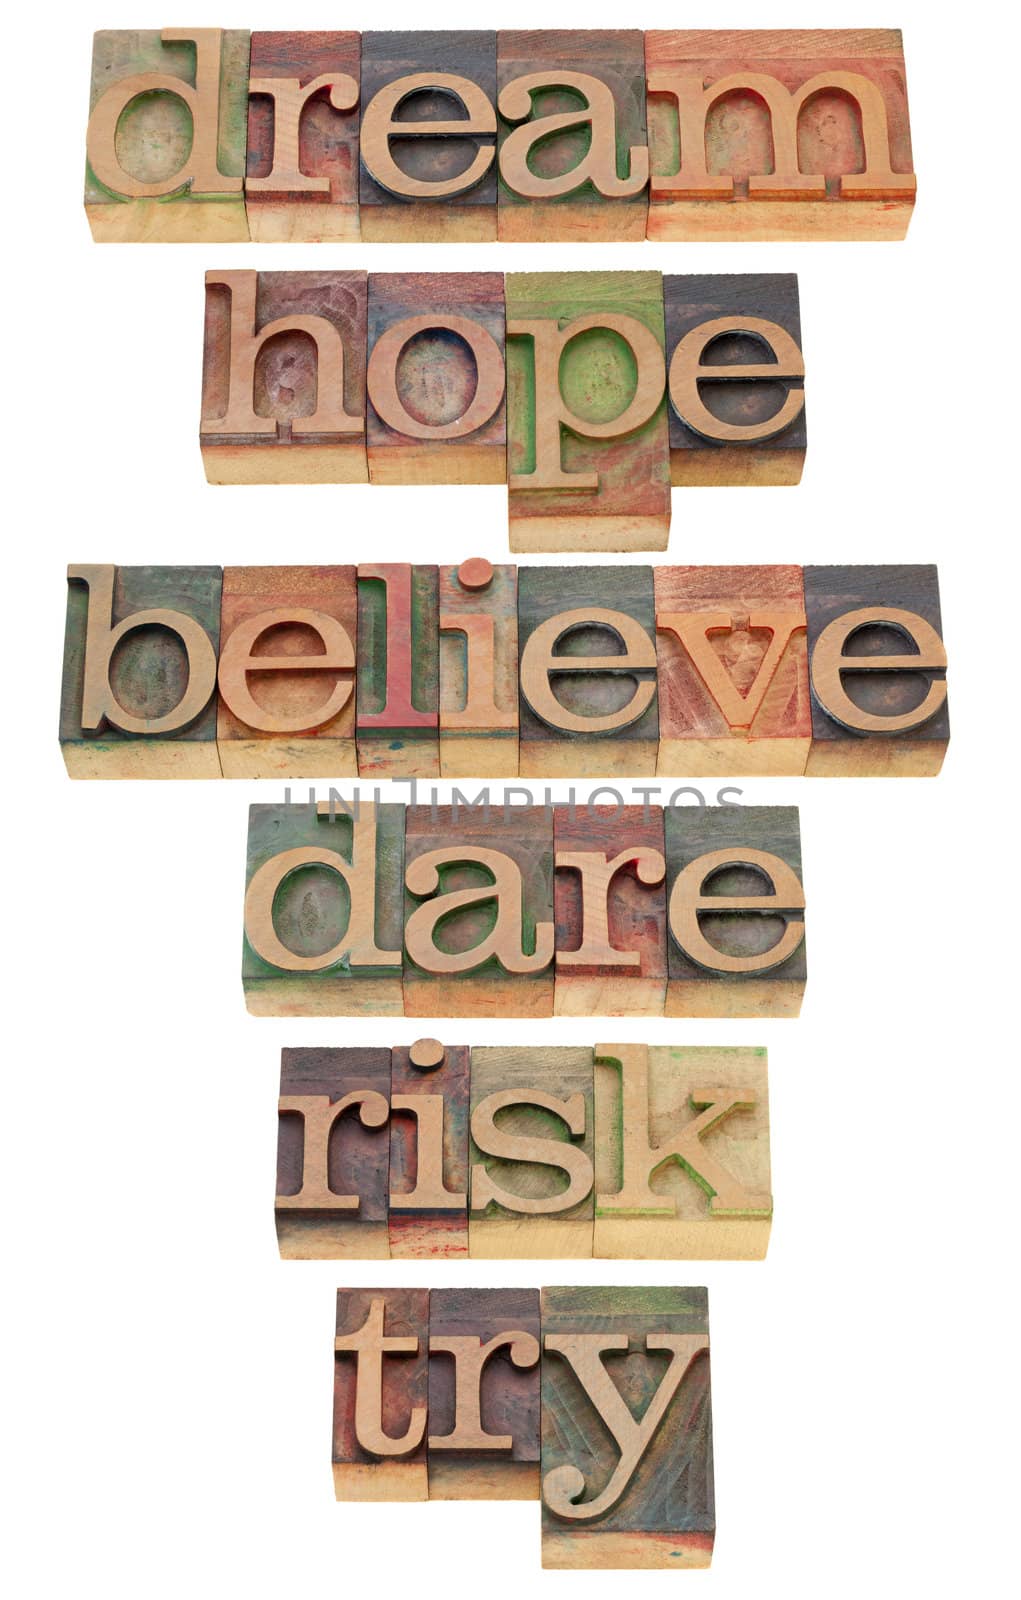 motivational words in letterpress type by PixelsAway